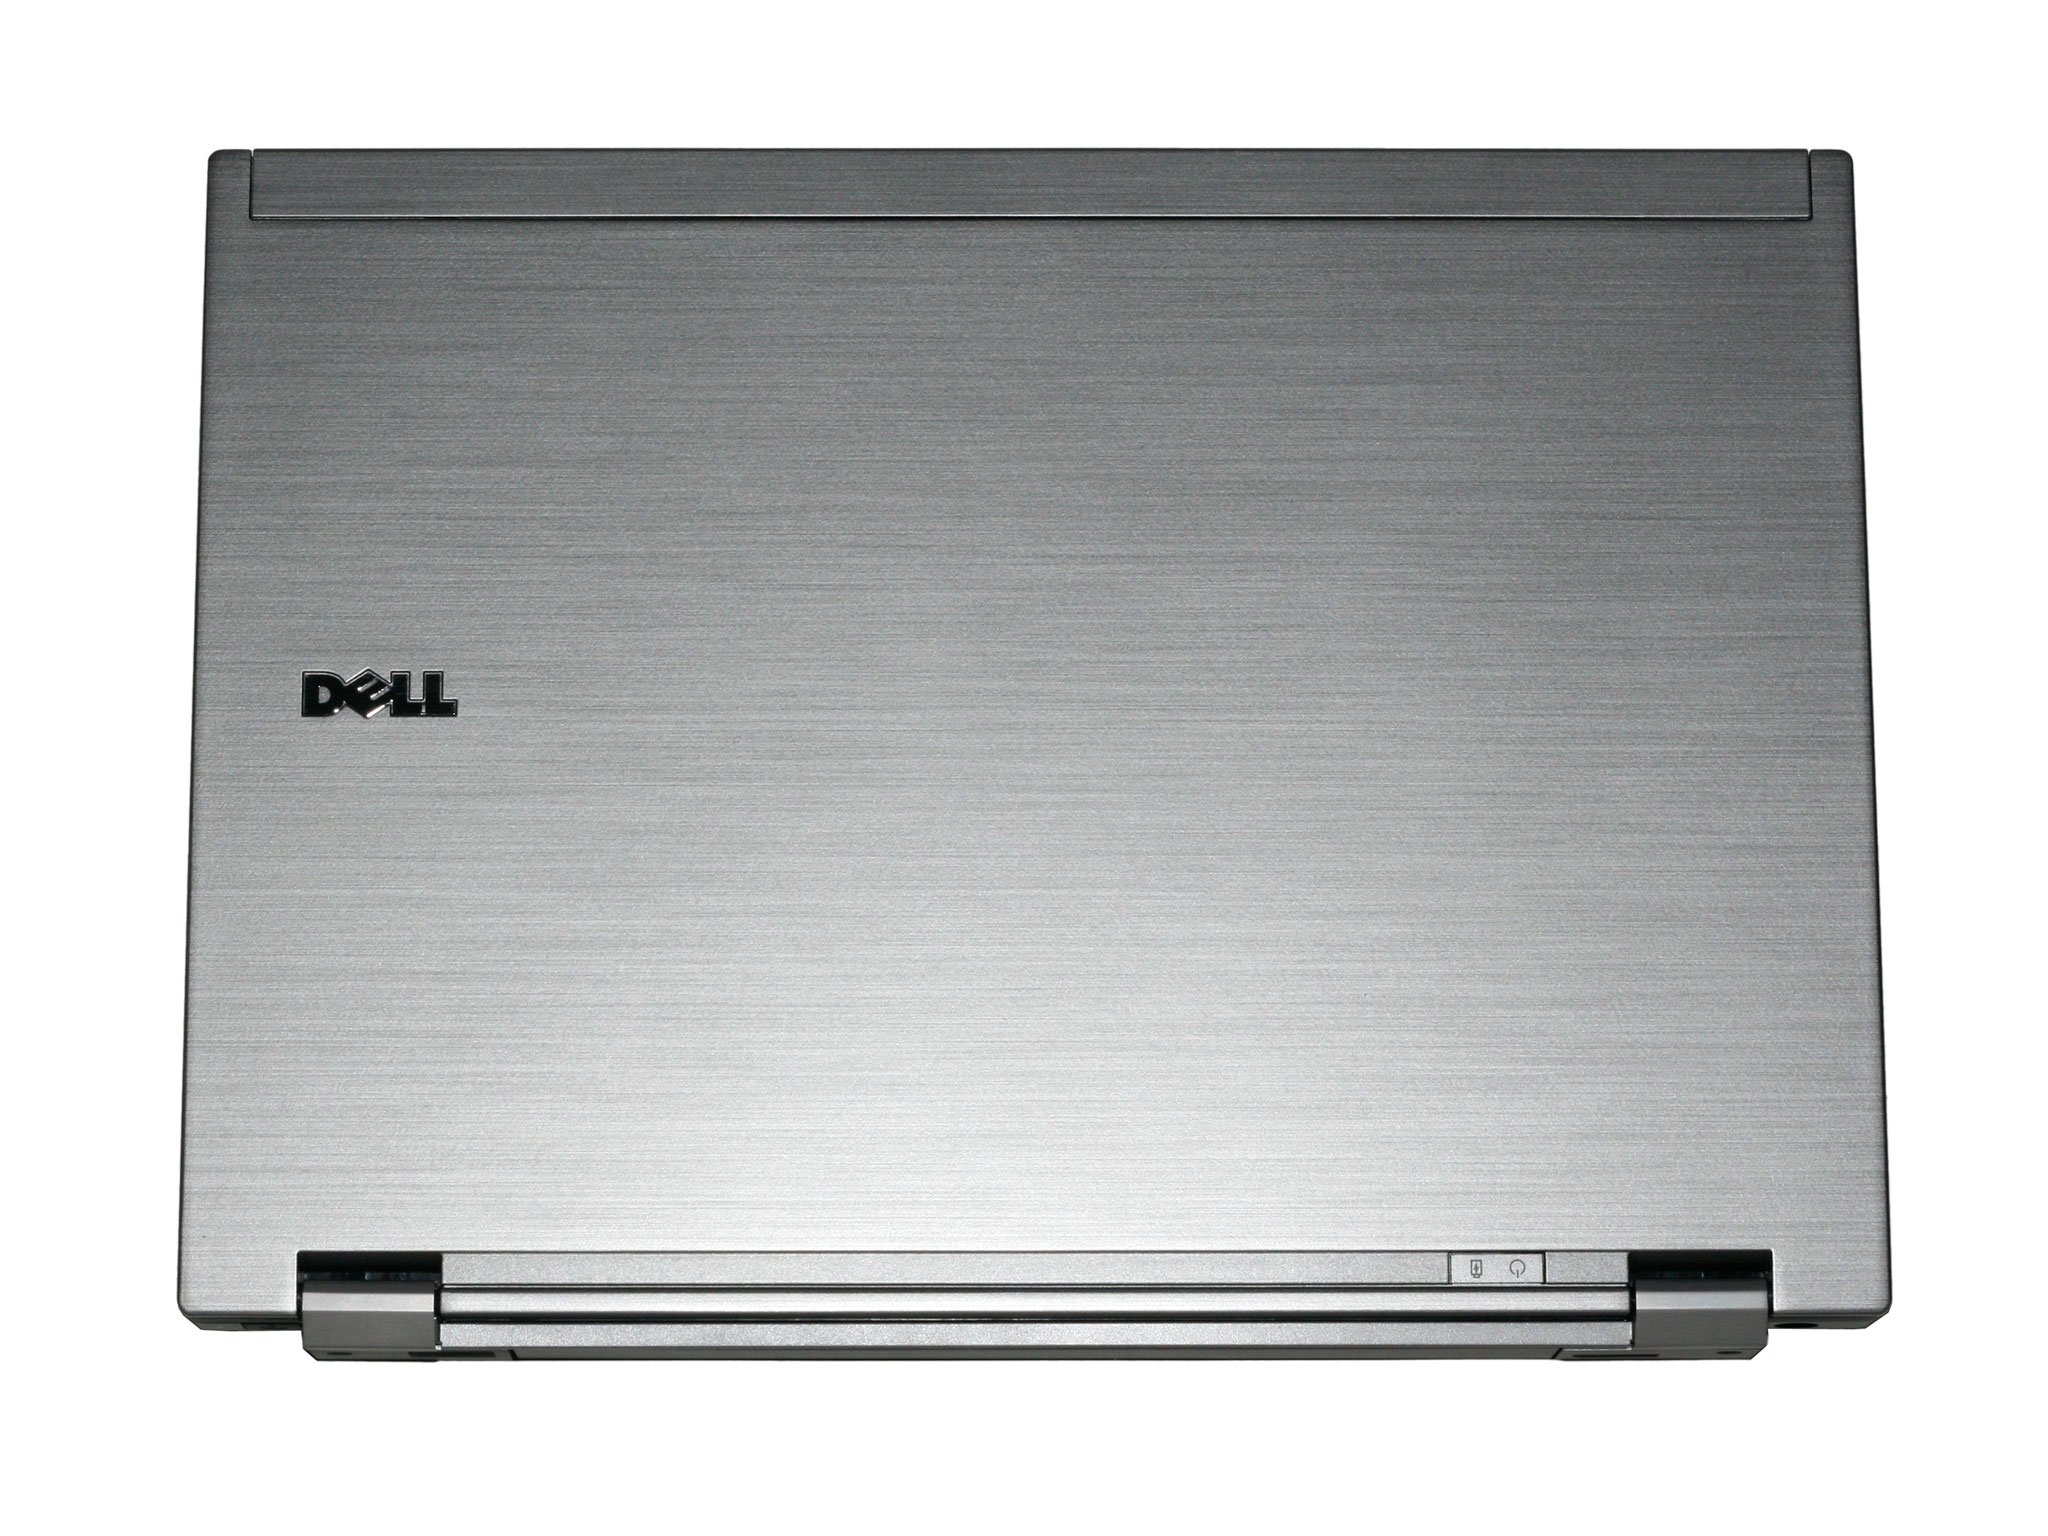 *Dell Latitude D430-D630 Giá Sinh viên--Delll E4200-E4300-E6400 Giá N.Viên văn phòng* - 11